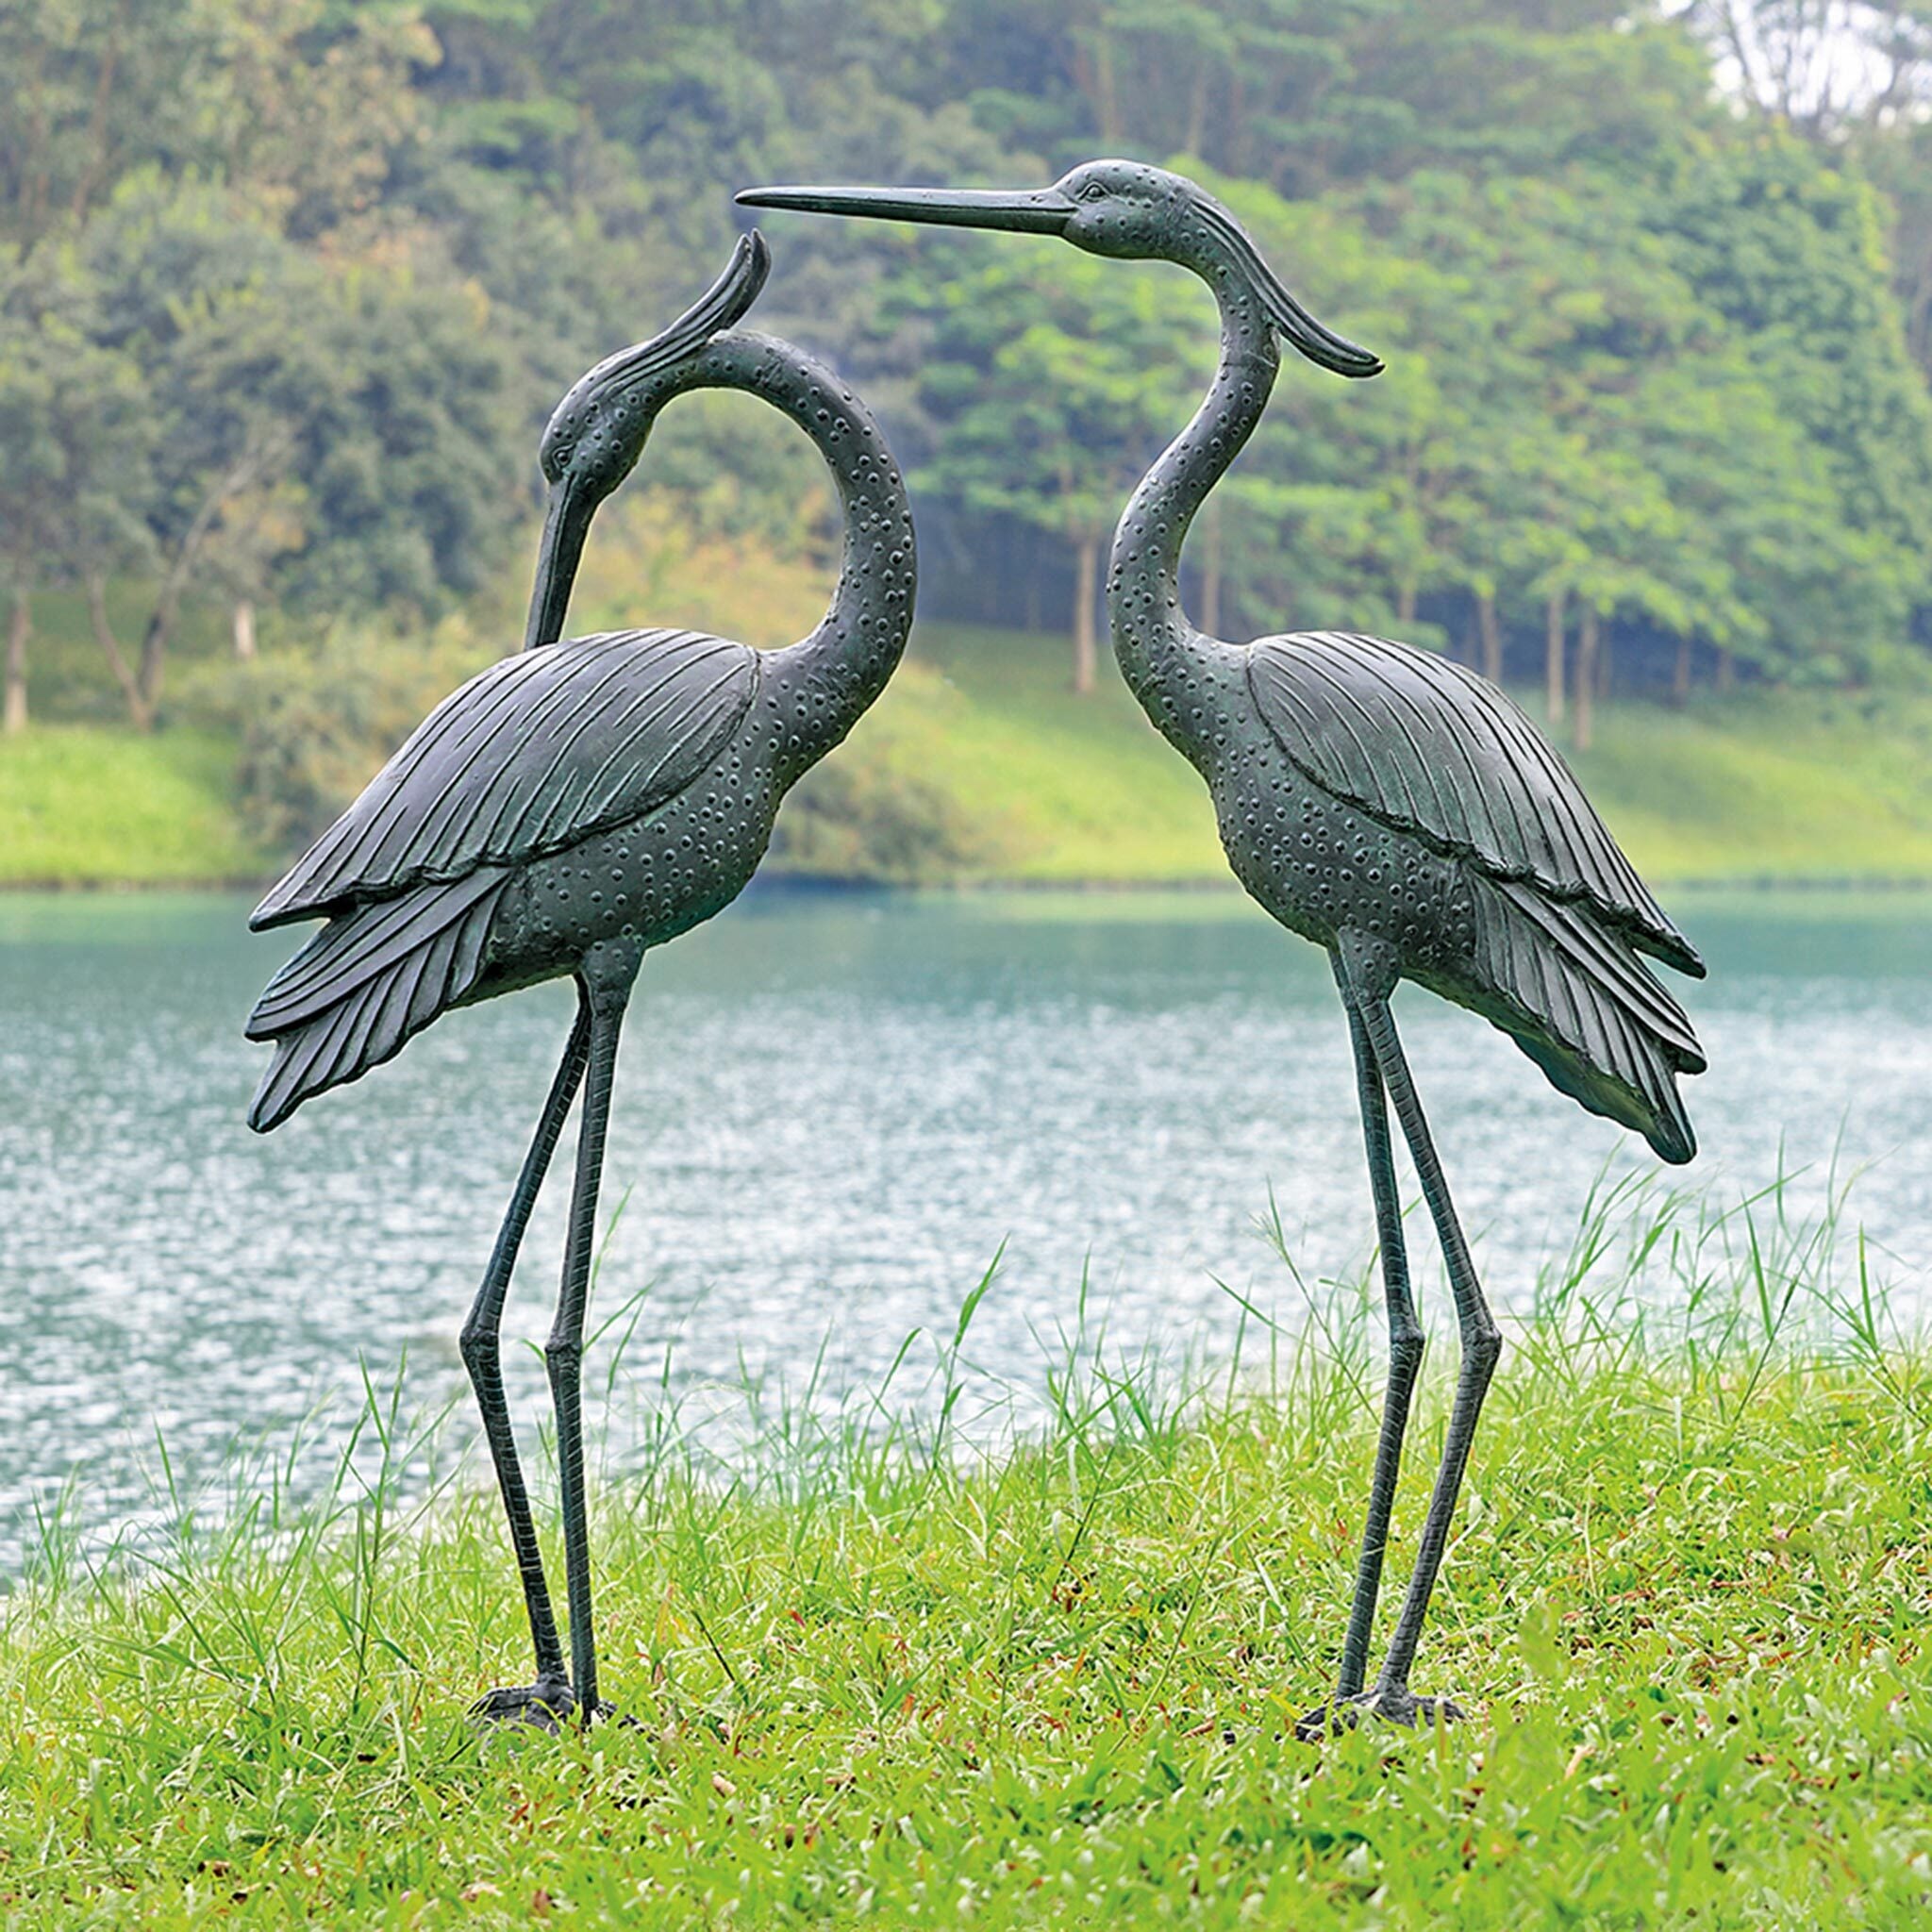 Marshland Royals Heron Garden Sculptures, Set of 2